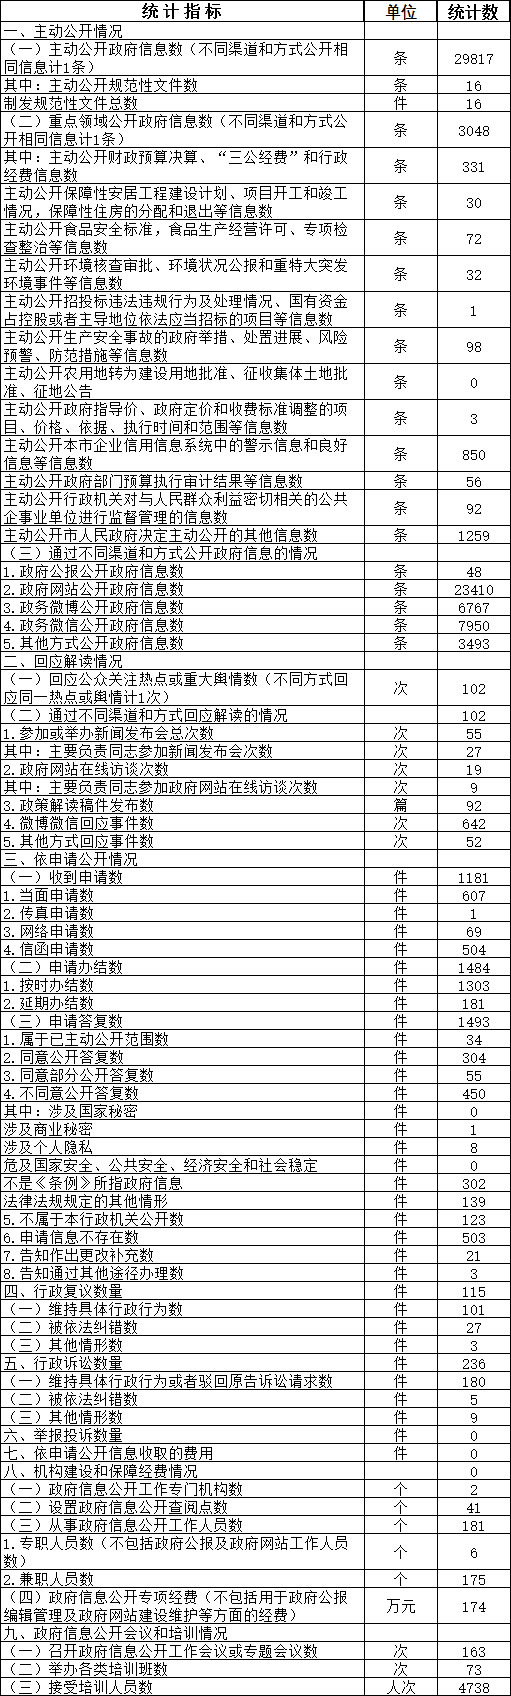 北京市西城區人民政府信息公開情況統計表(2017年度)